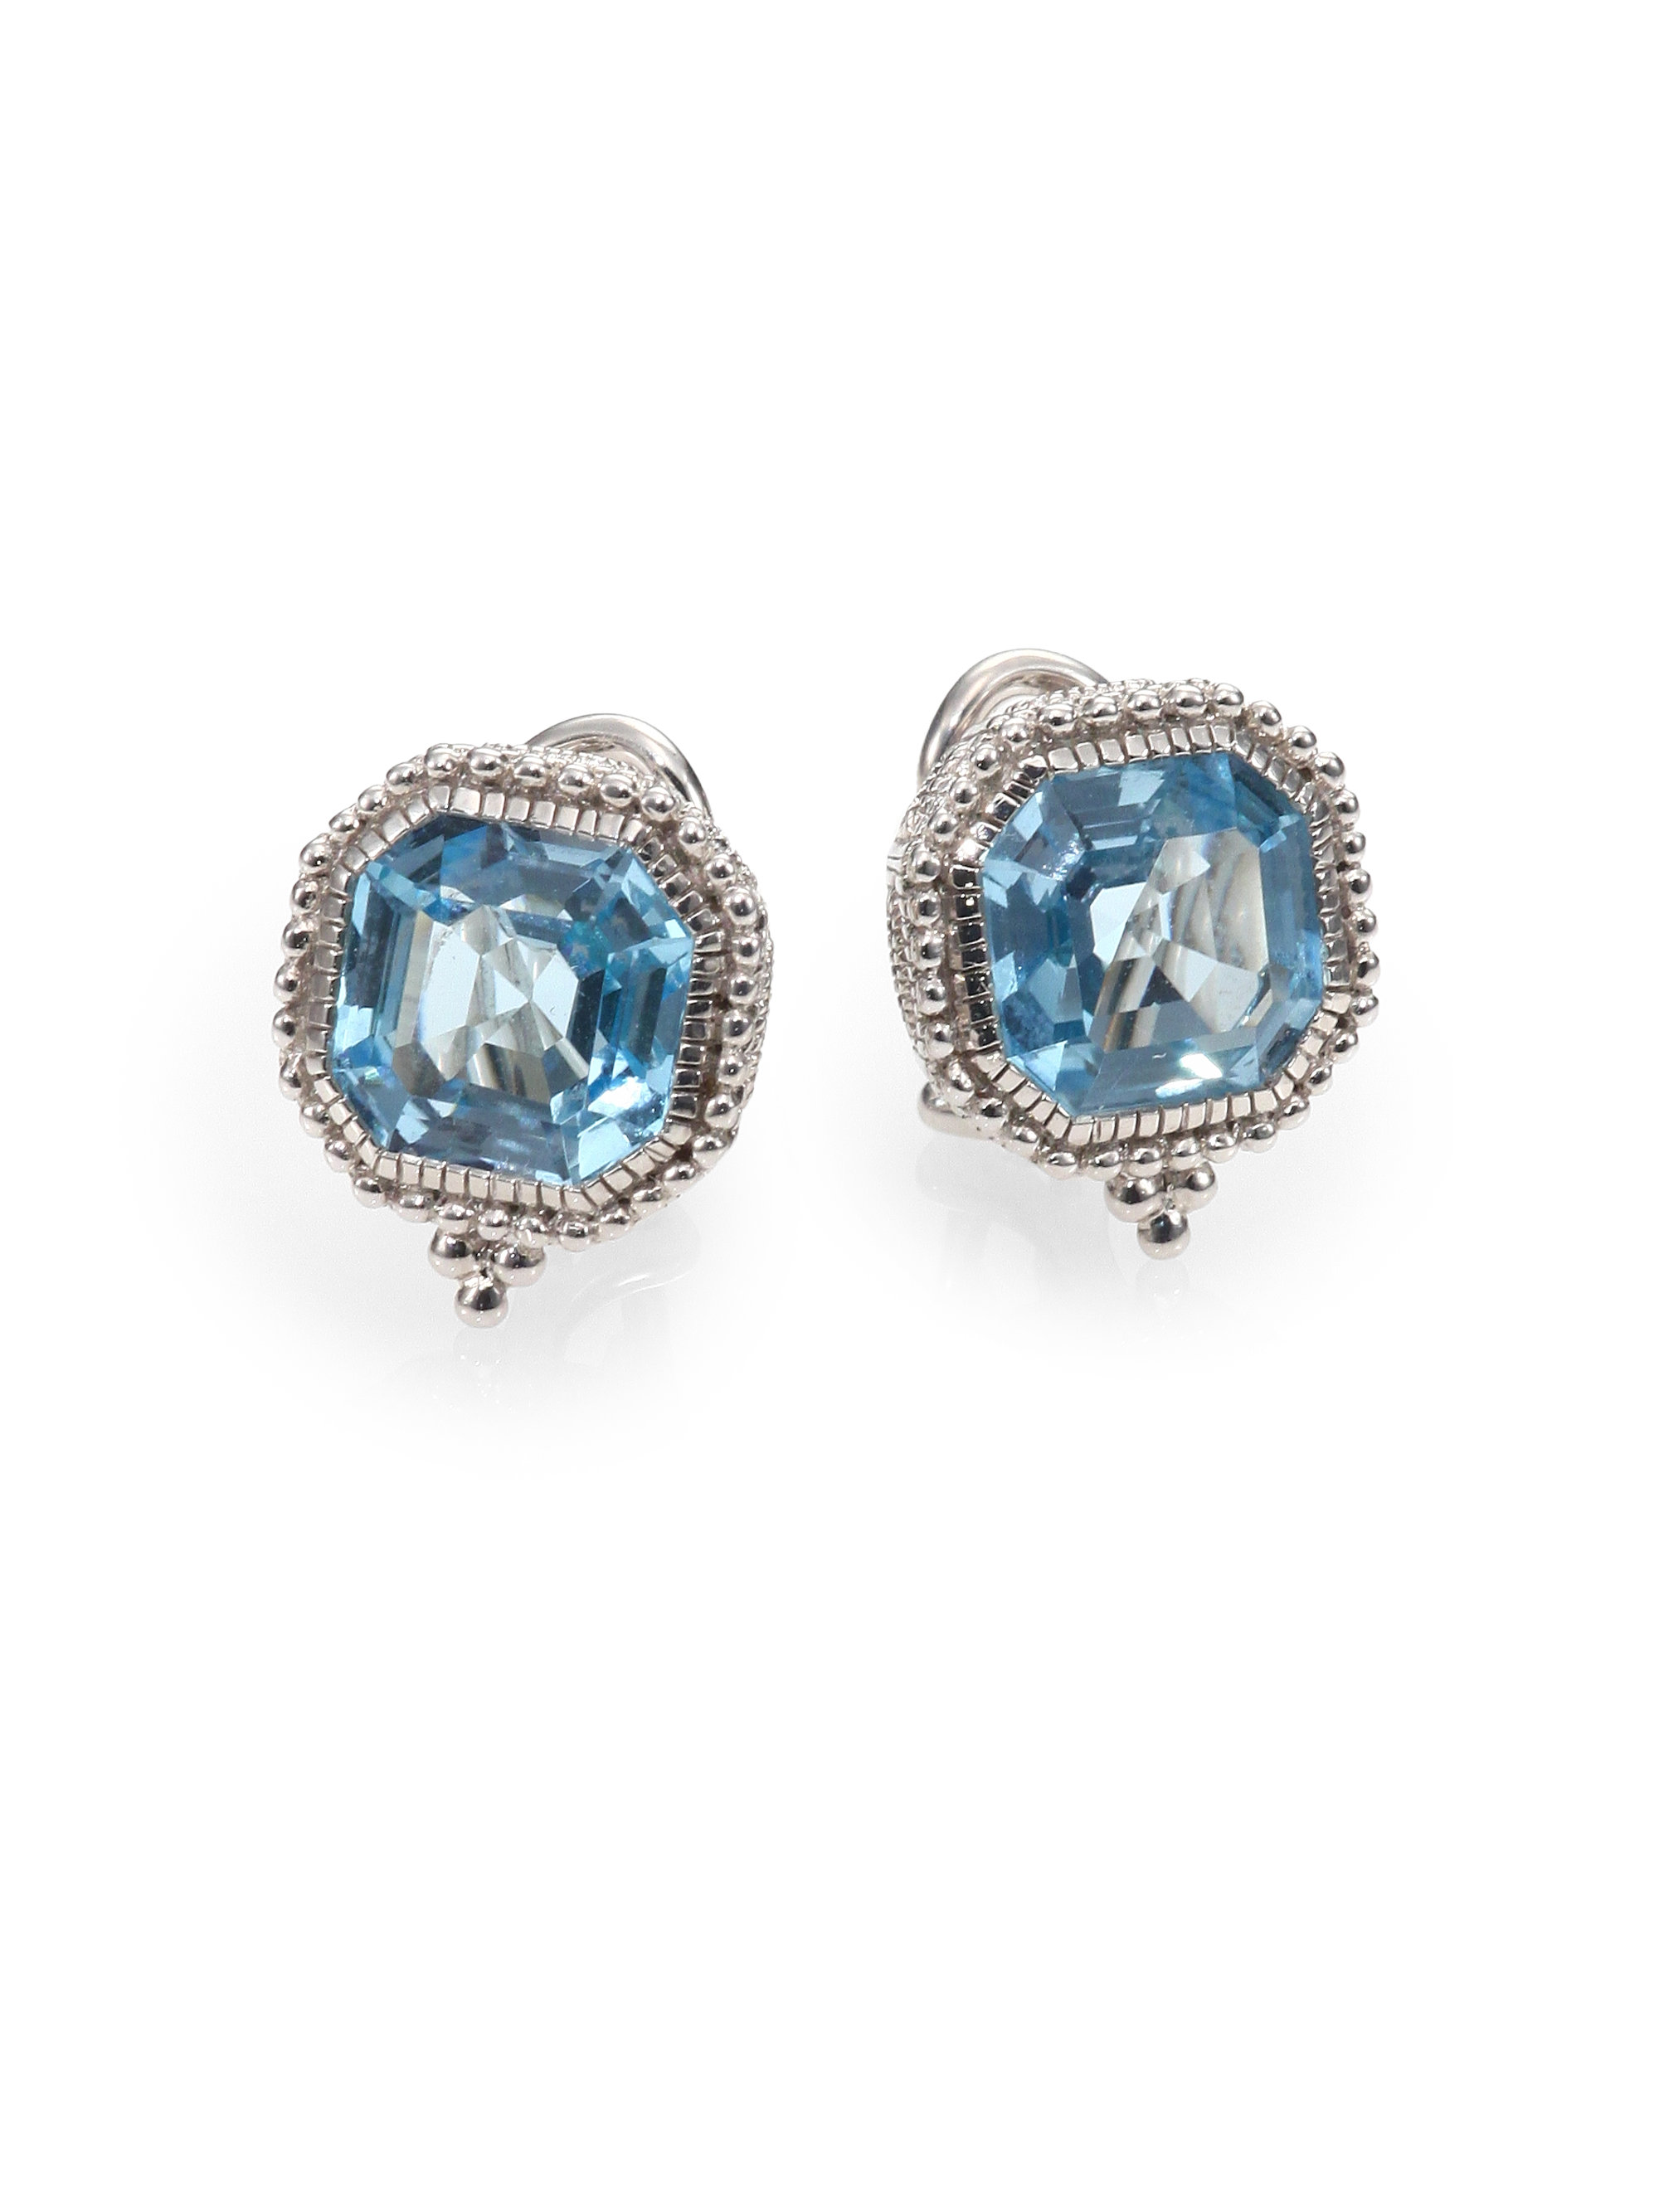 Judith ripka Estate Blue Topaz & Sterling Silver Square Earrings in ...